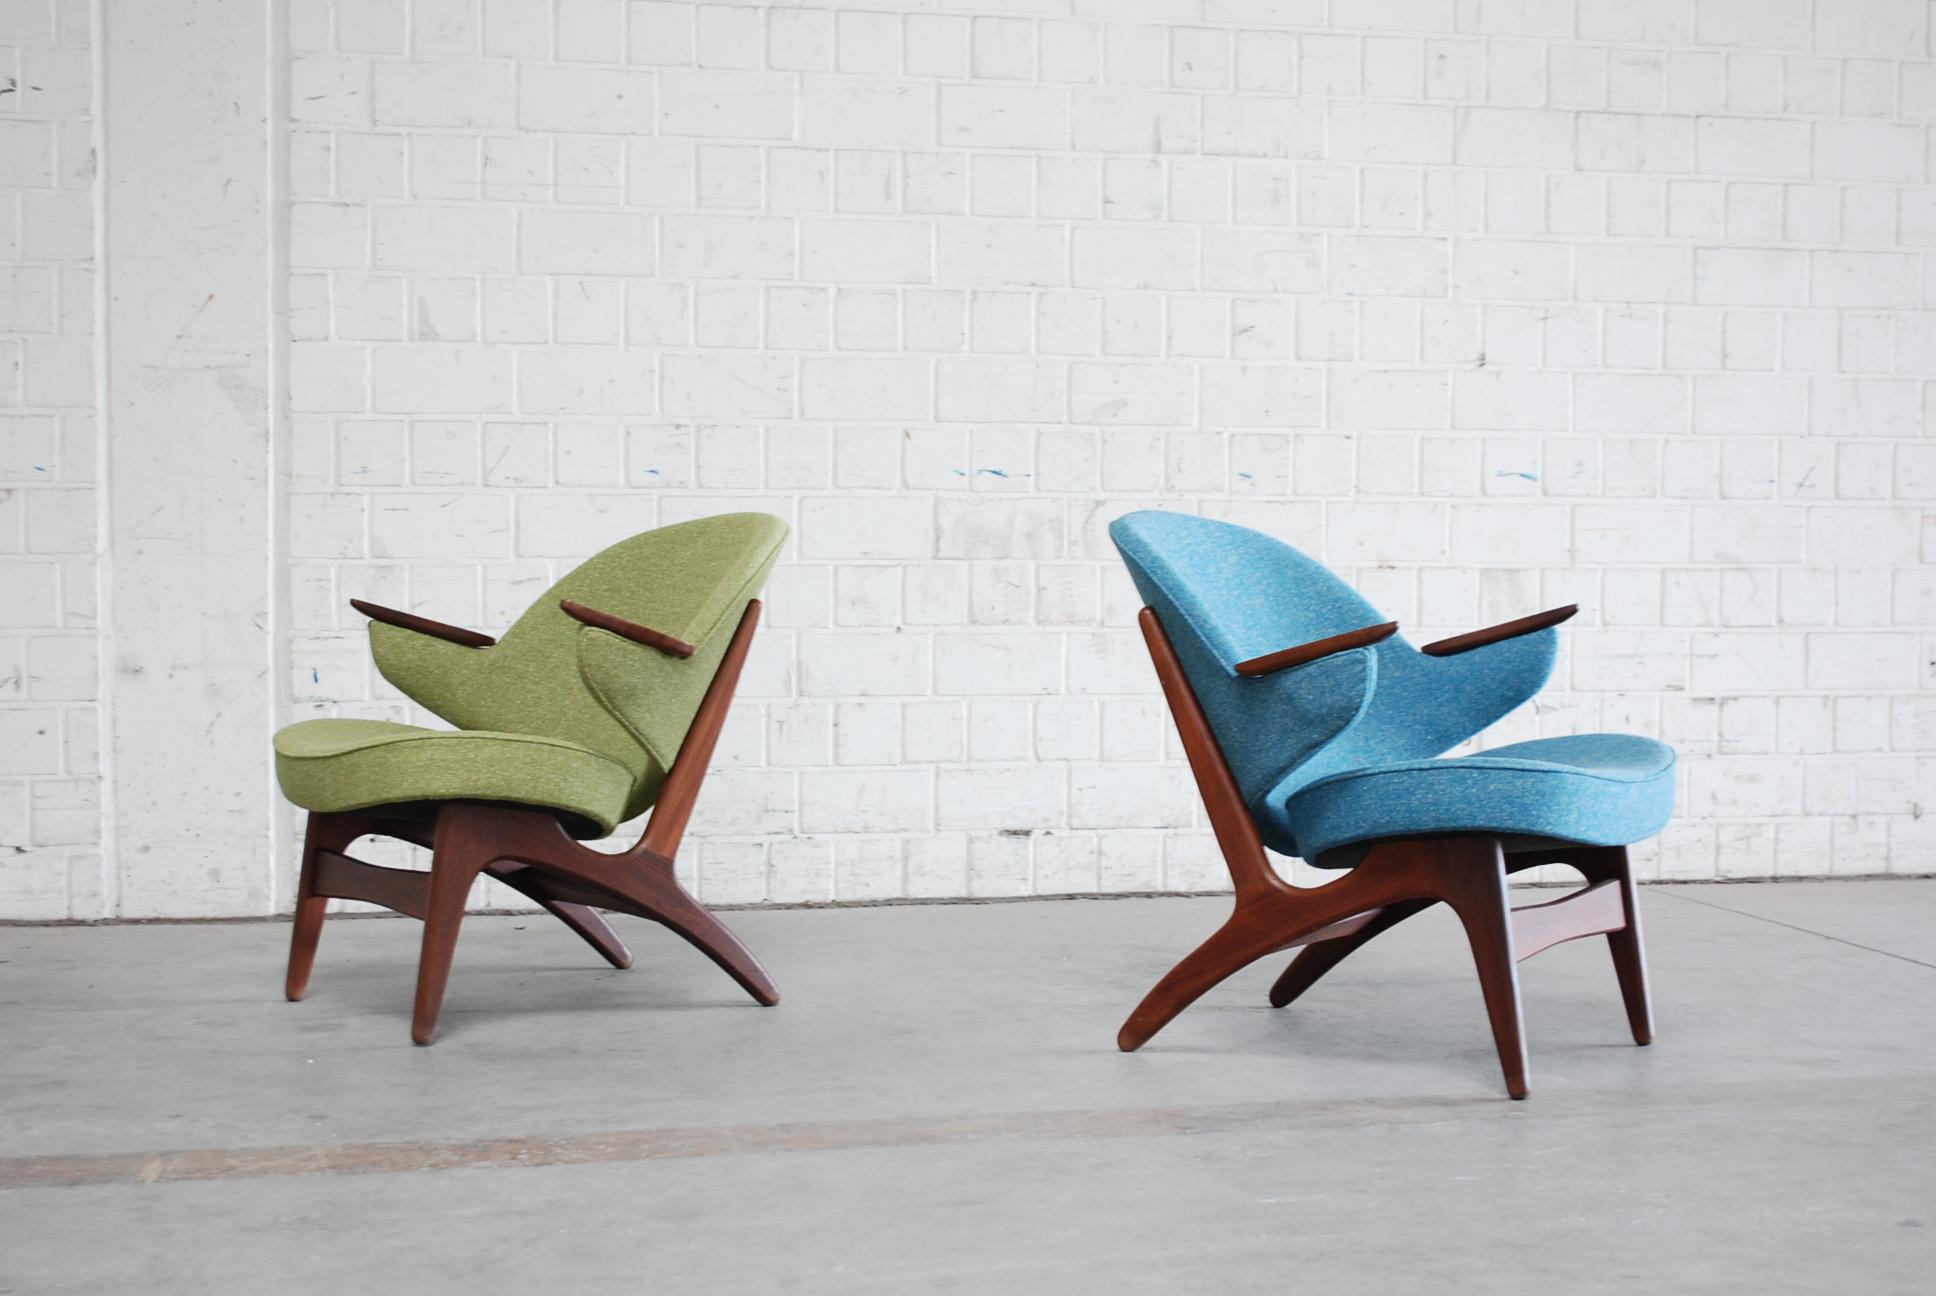 Une paire de fauteuils en teck de couleur pétrole et verte.
Design Carl Edward Matthes.
La chaise a été entièrement restaurée et tapissée  en 2 couleurs différentes qui vont bien ensemble. Vert et pétrole.
Le tissu est fabriqué à partir d'un tissu